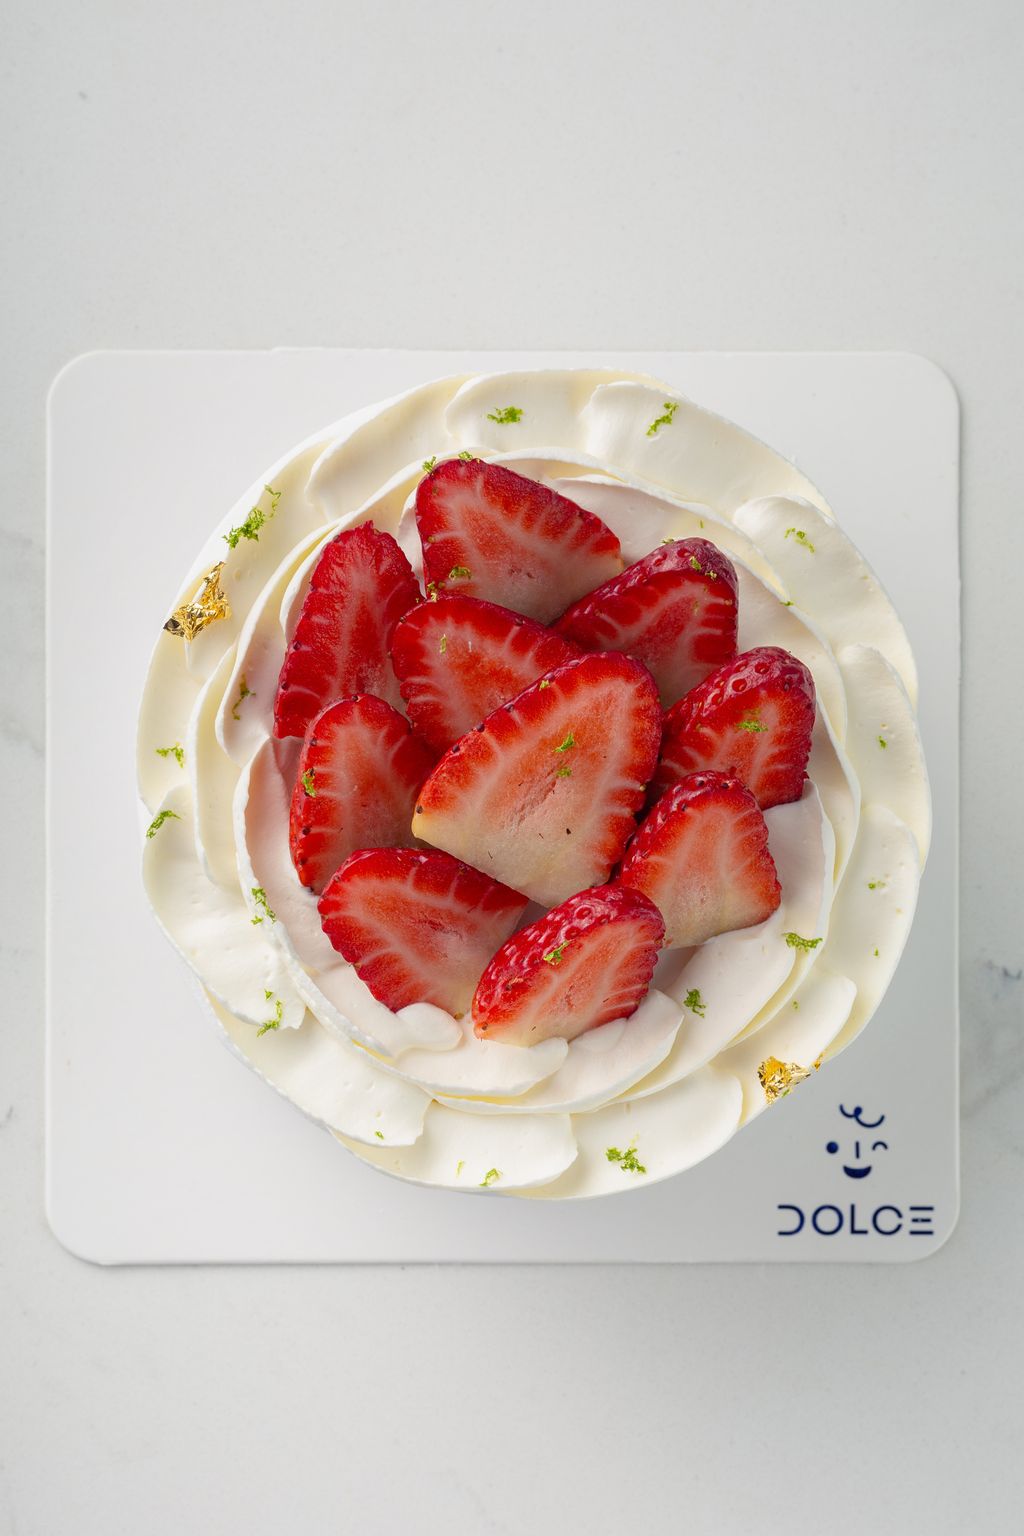 Dolce_Whole Cake-83